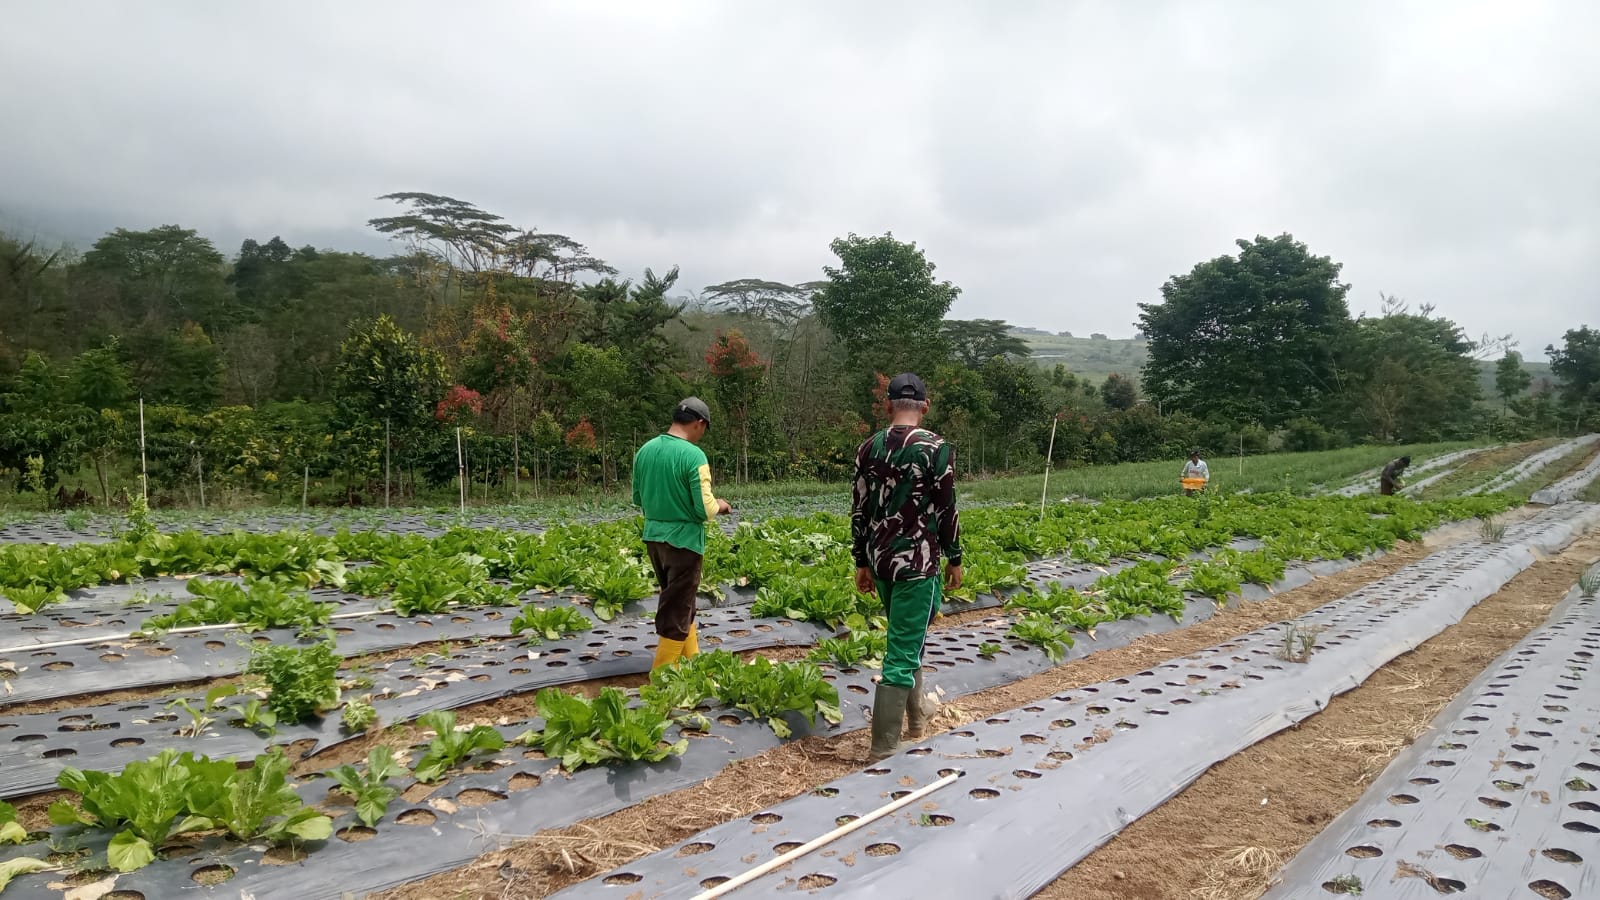 Petani Ataran Matang Basung Bangun Jalan Secara Swadaya